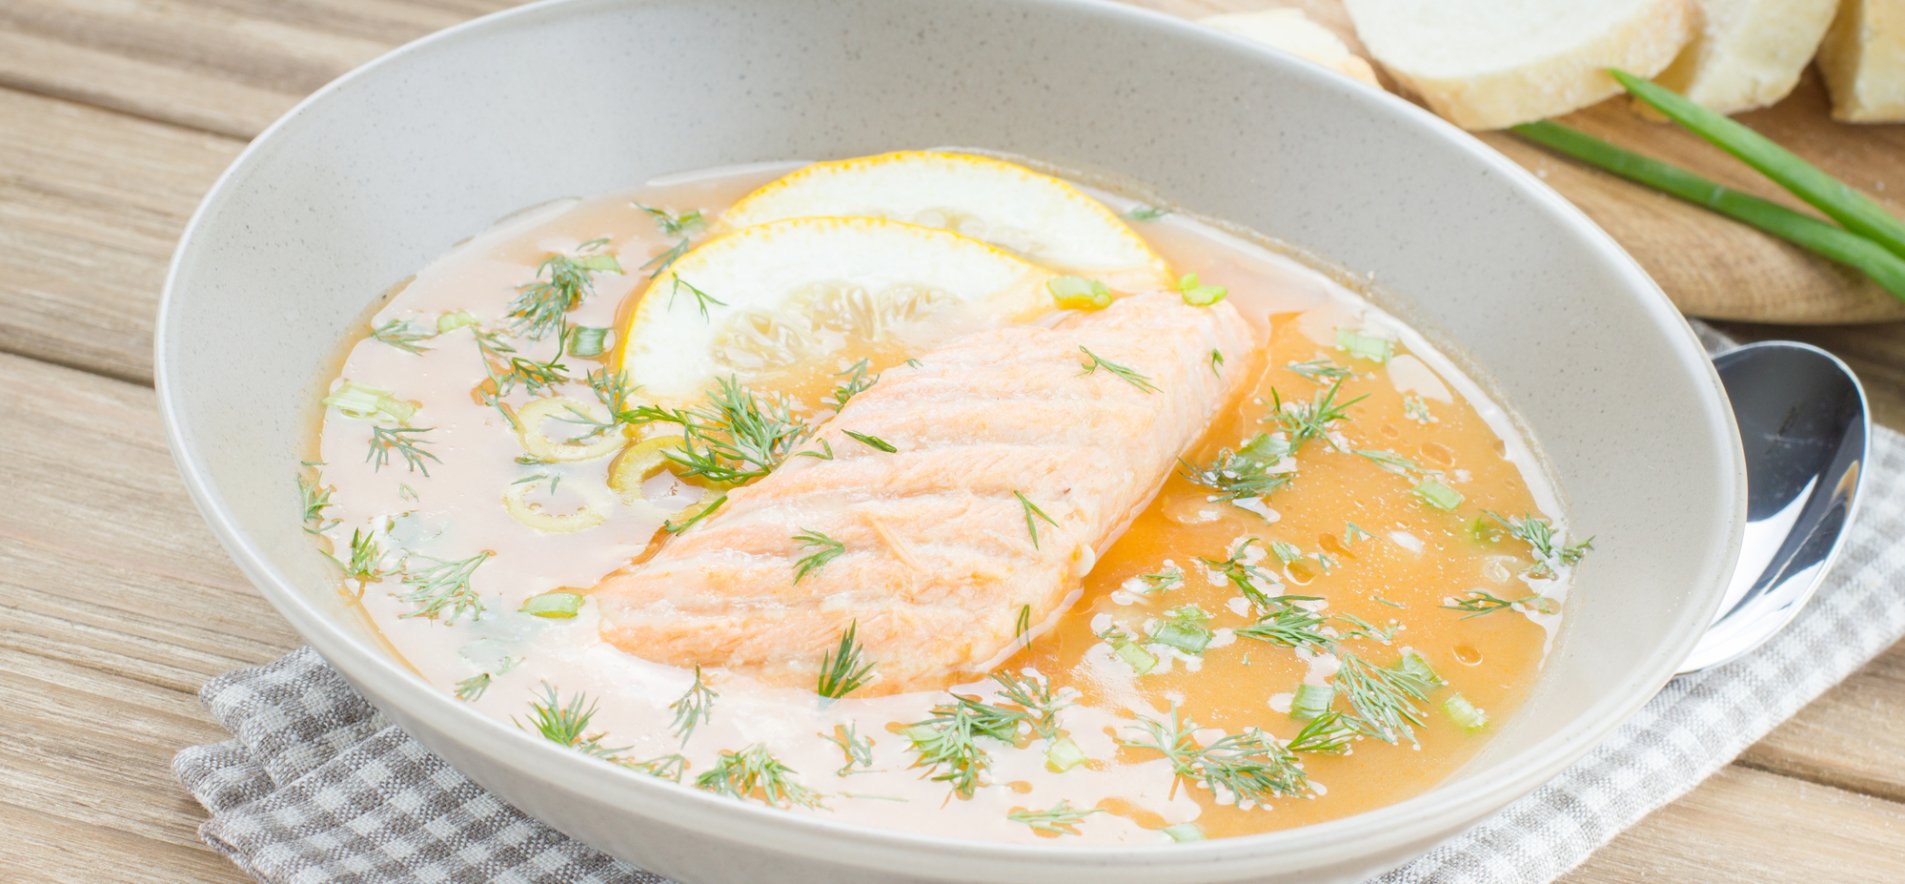 Рецепт рыбного супа приготовленного с лимоном в горшочках: